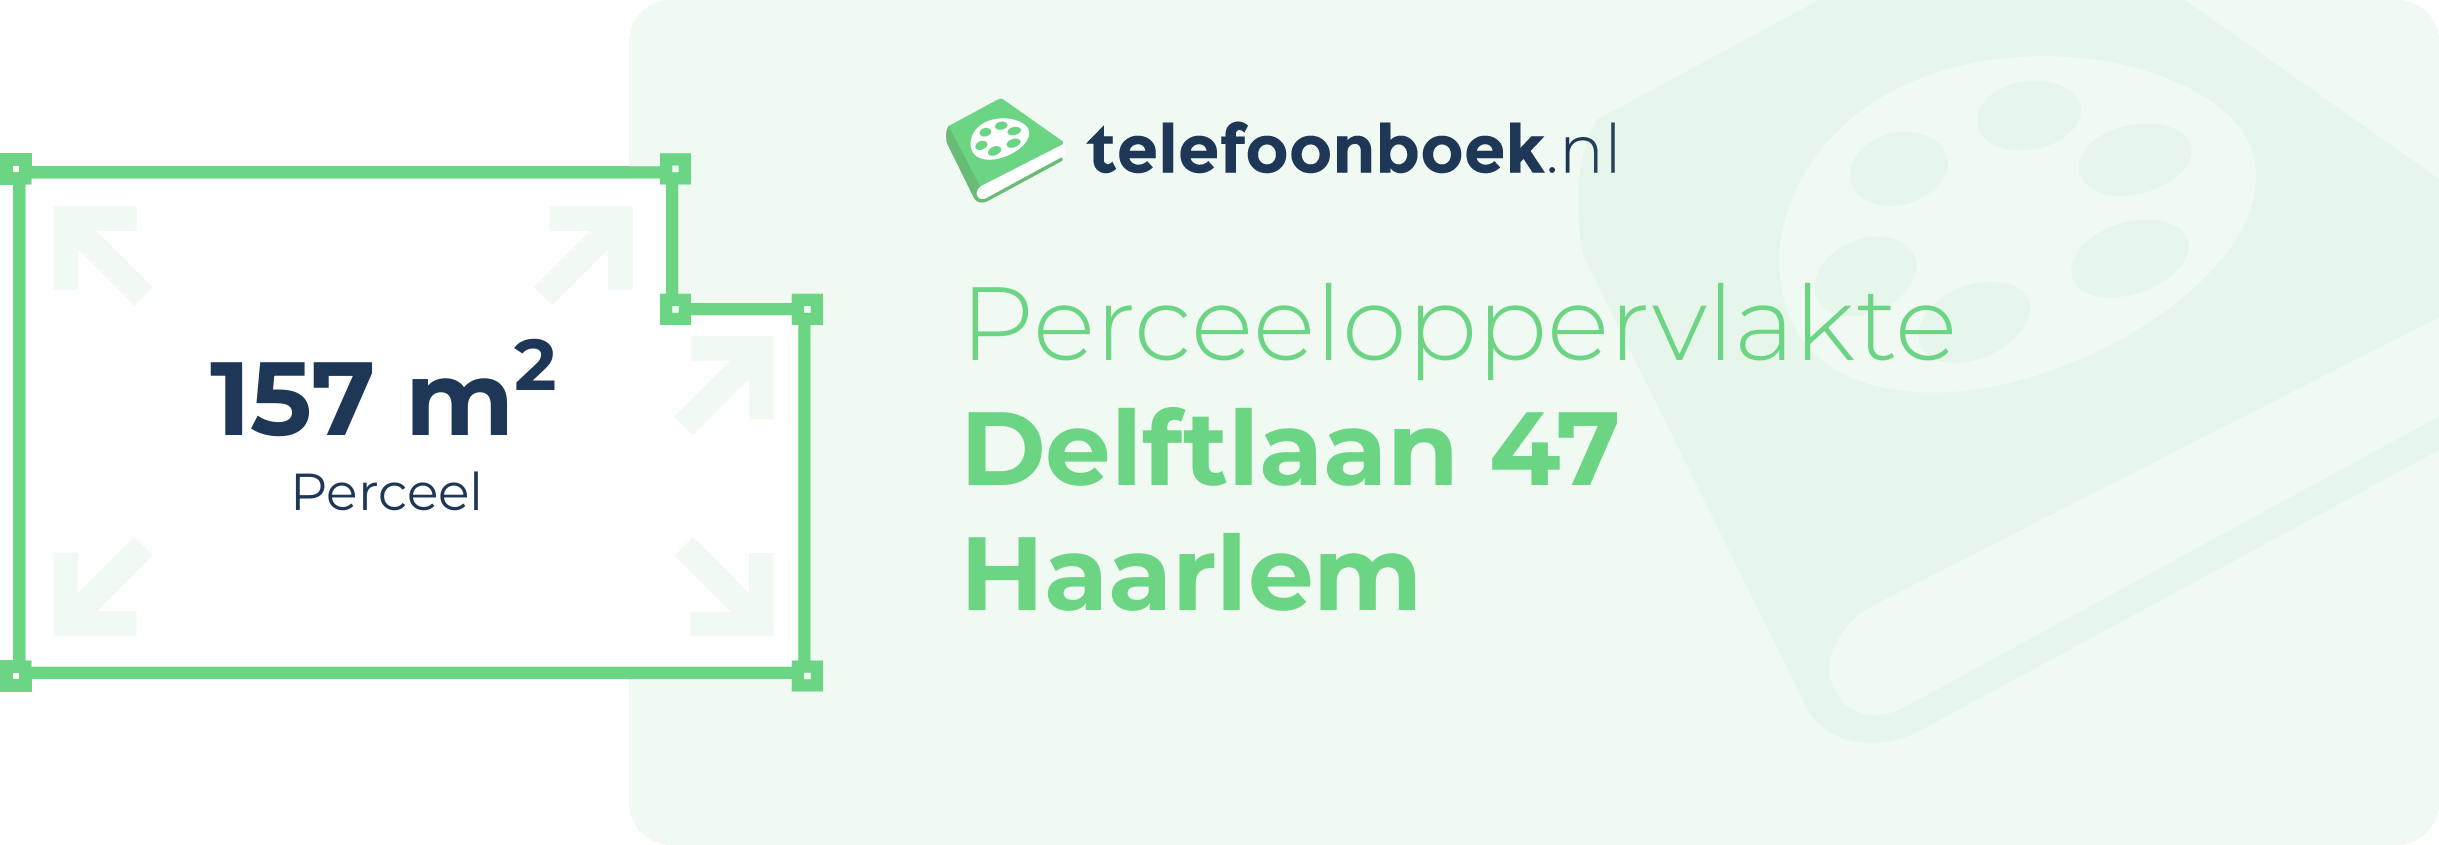 Perceeloppervlakte Delftlaan 47 Haarlem